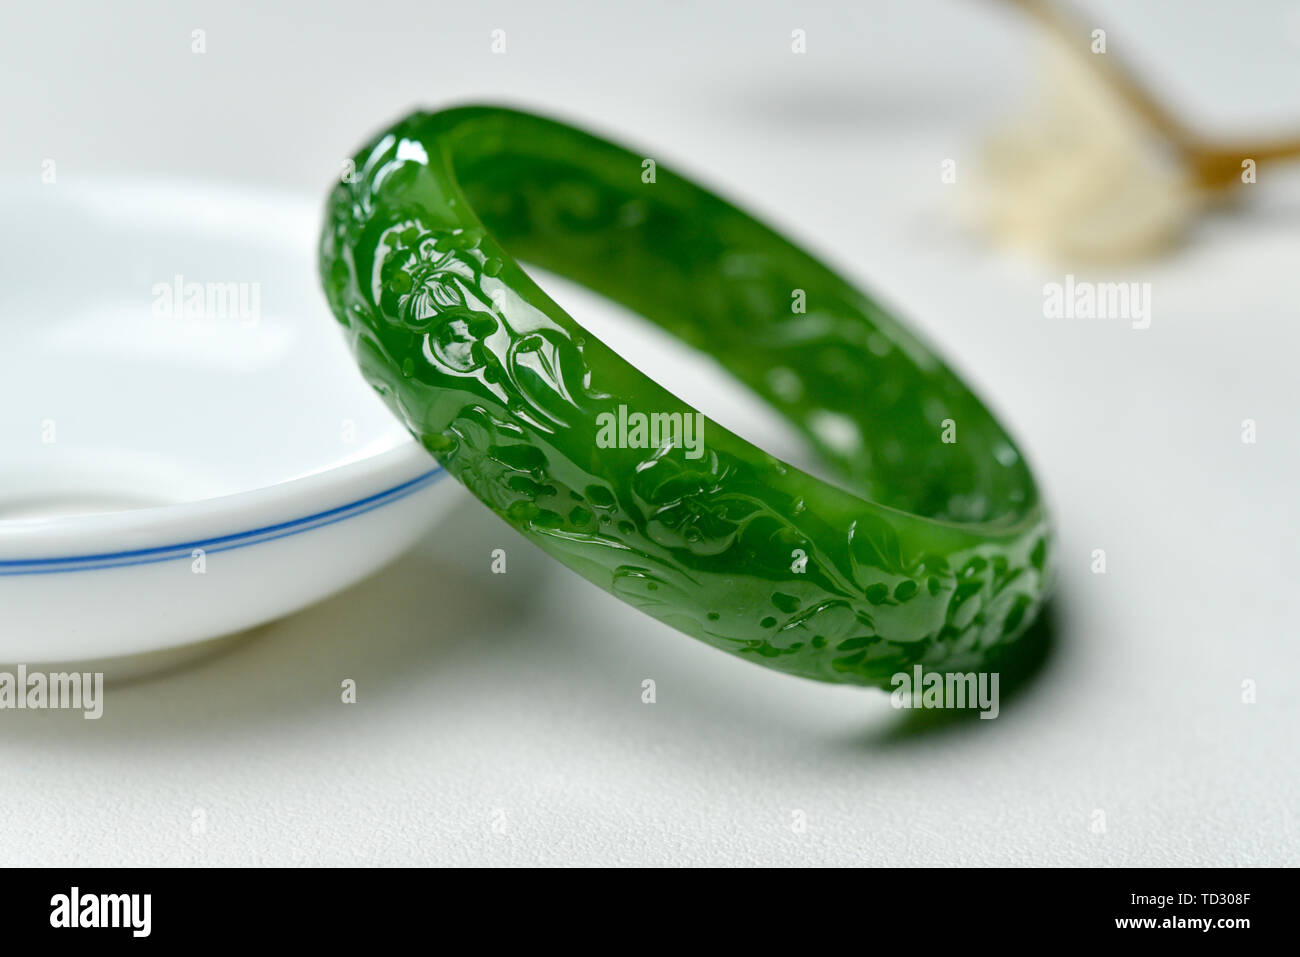 Pulseras de jade fotografías e imágenes de - Alamy